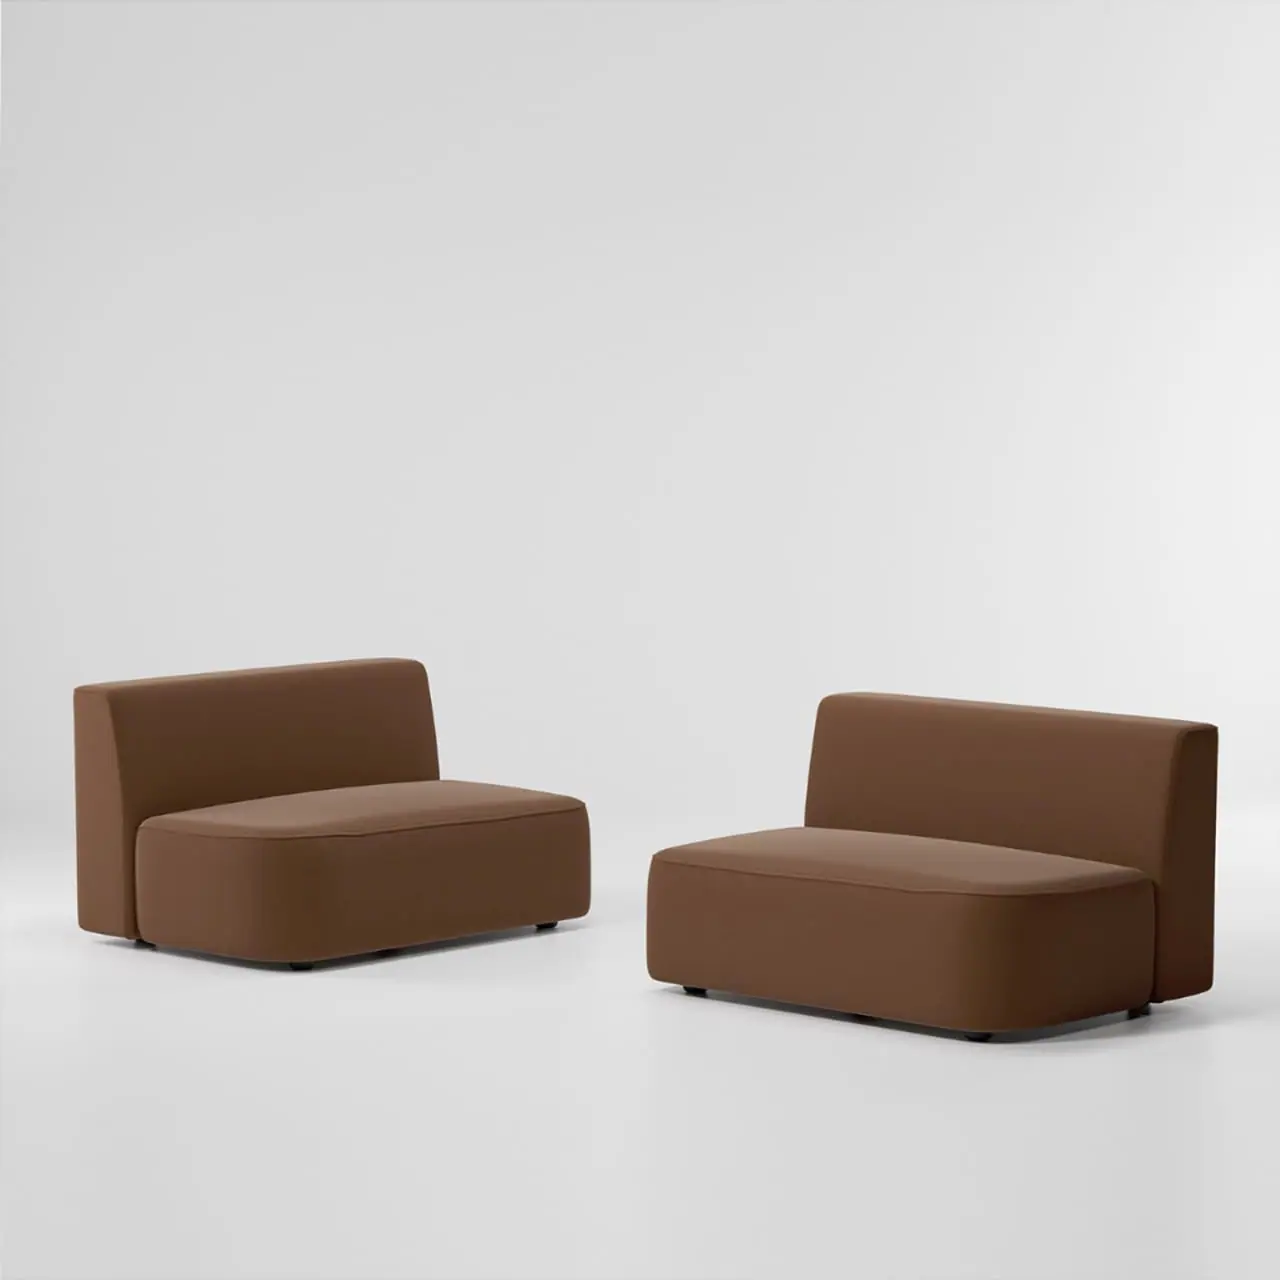 kettal-o-modular-sofa16